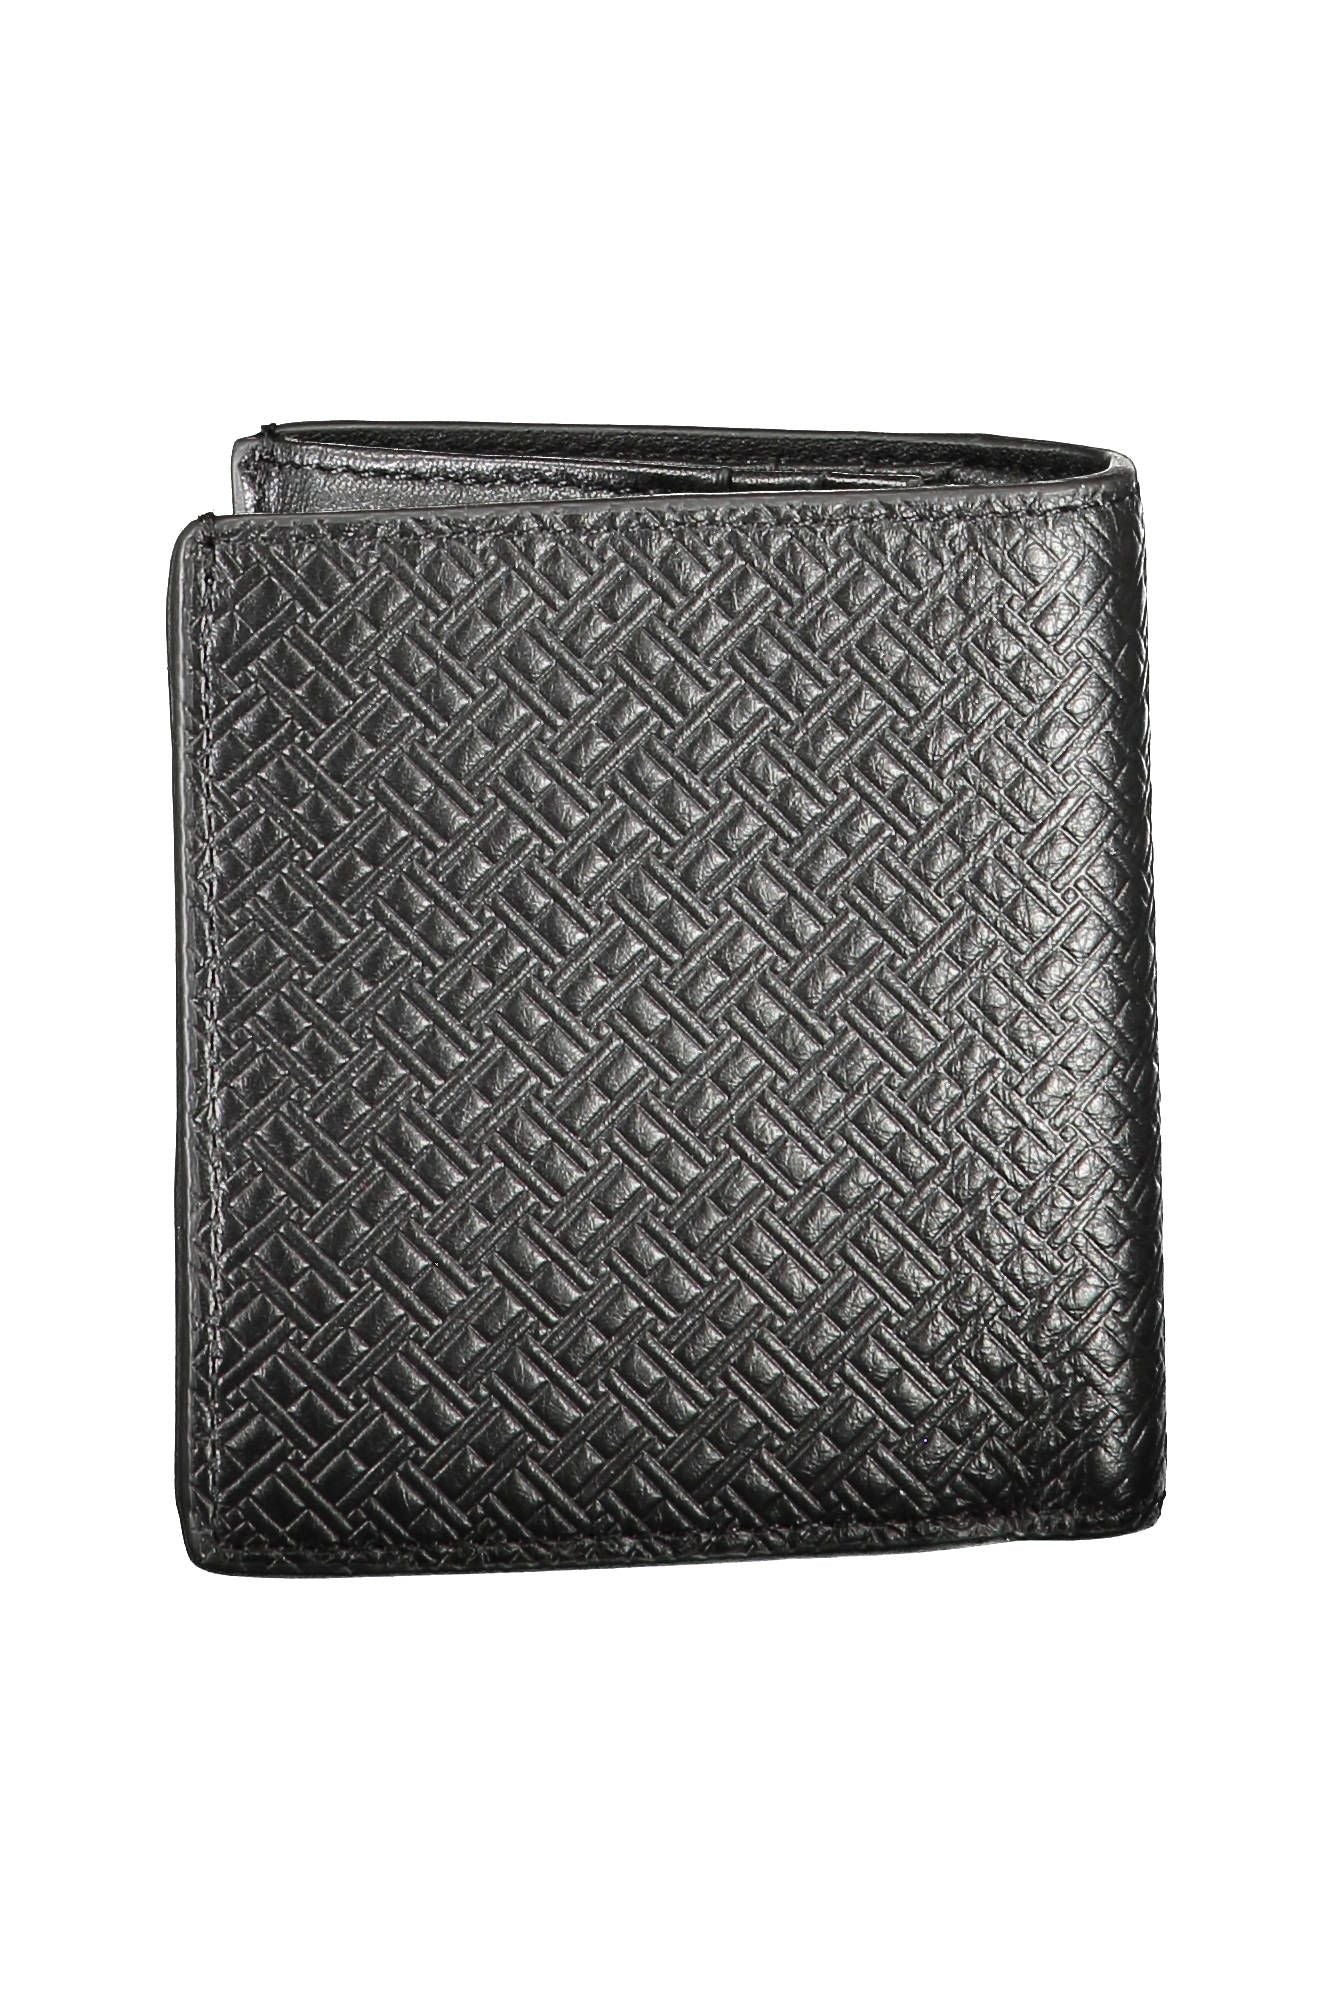 Tommy Hilfiger Elegant Black Leather Bifold Wallet